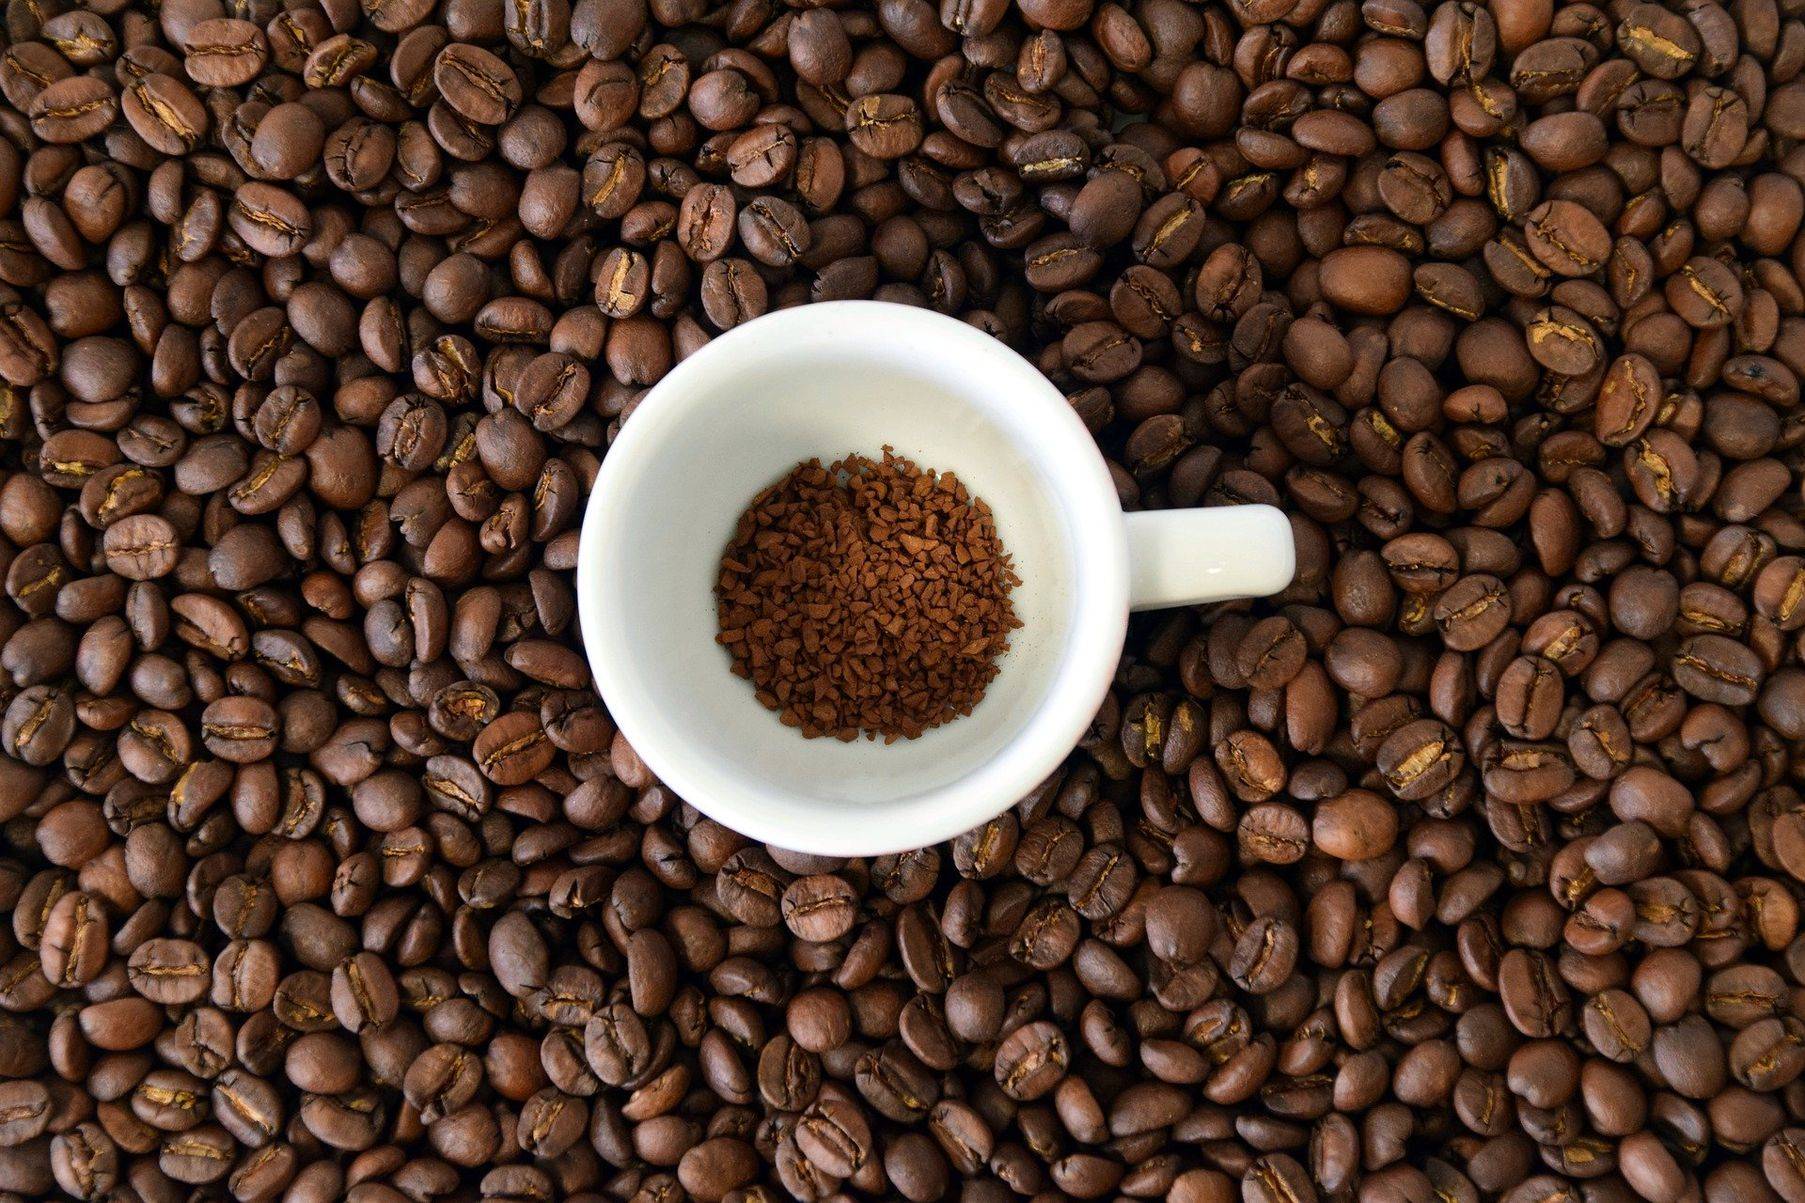 22 лучших брендов кофе - рейтинг 2021